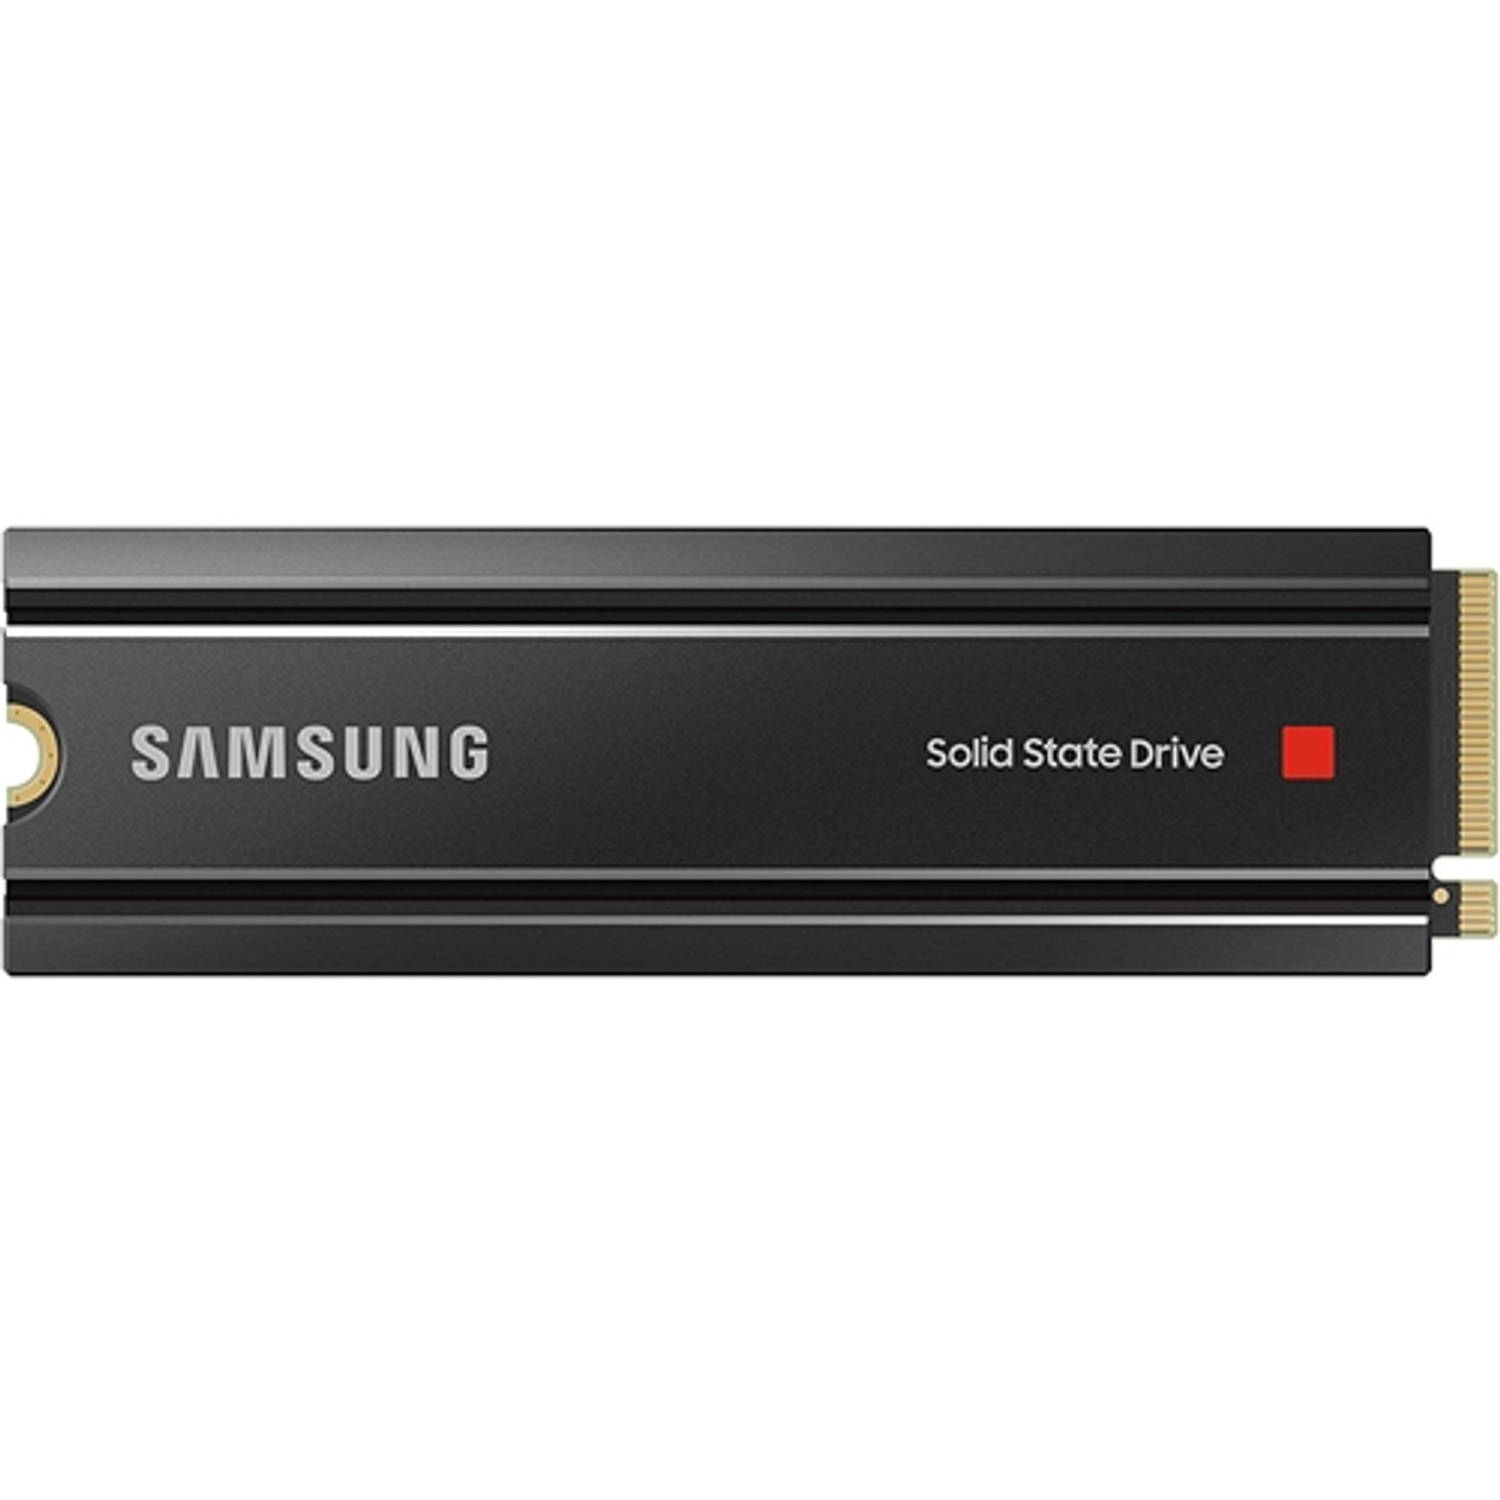 Dubbelzinnig Verloren Elasticiteit Samsung interne harde schijf SSD 980 Pro met Heatsink (1TB) | Blokker